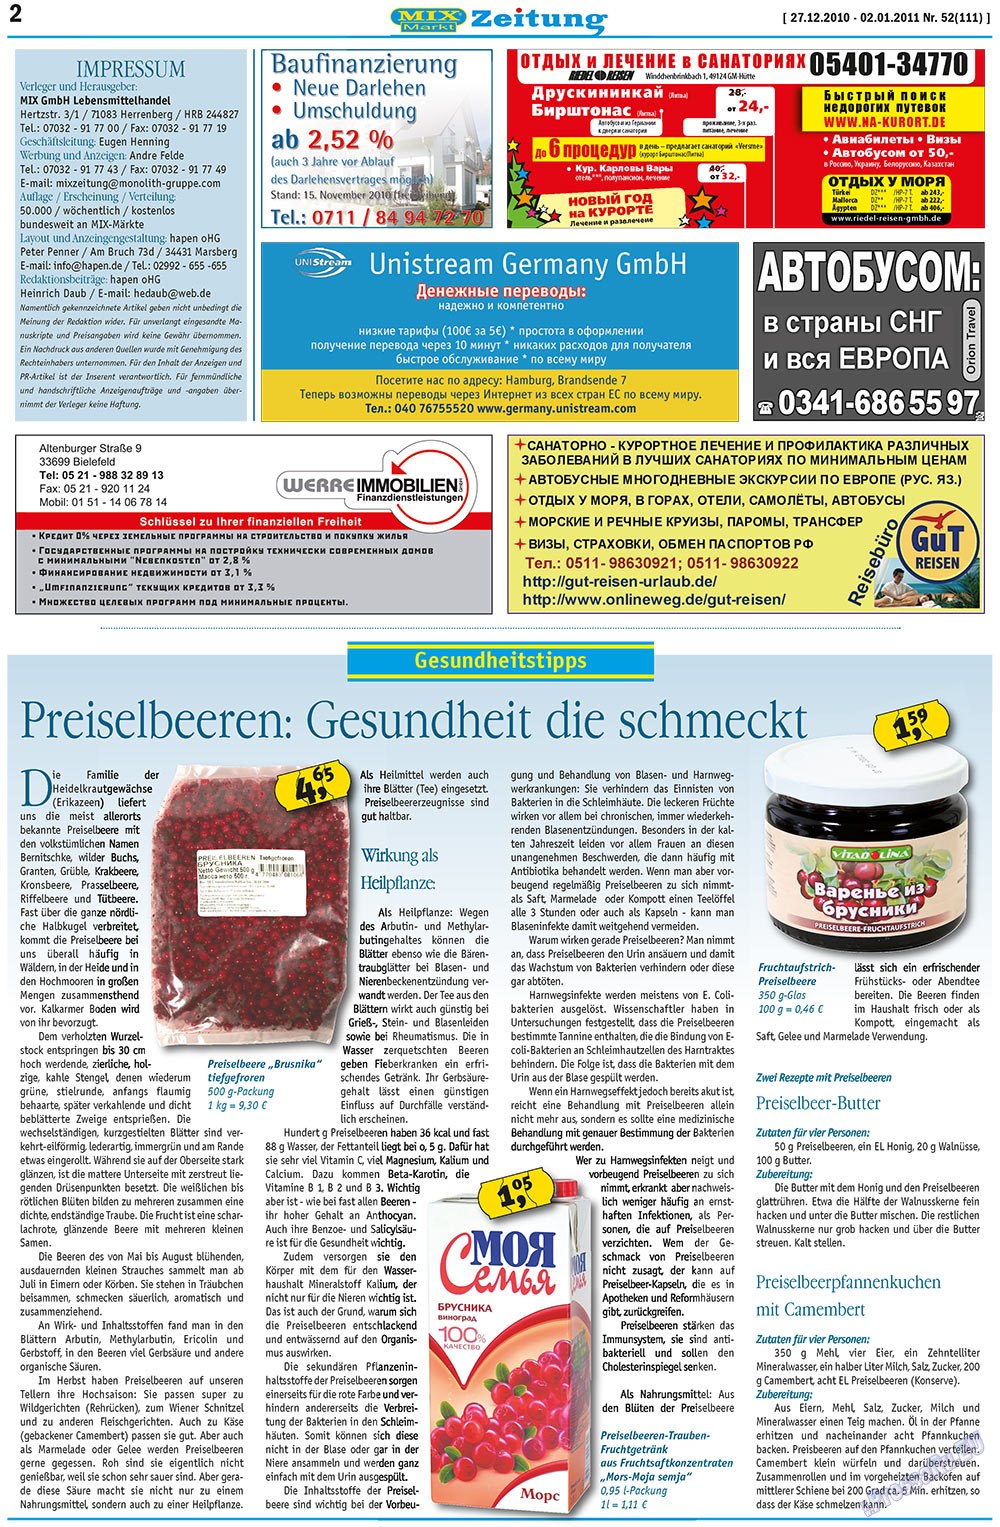 MIX-Markt Zeitung, газета. 2010 №52 стр.2